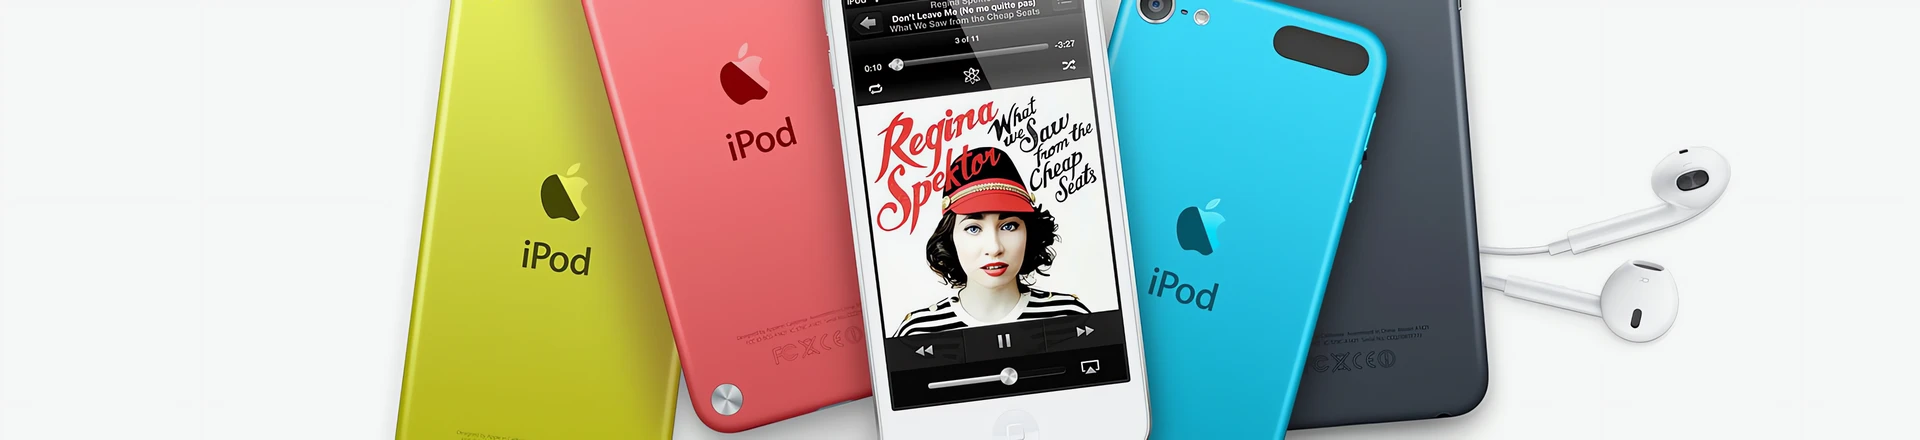 Kończy się pewna era - Apple kończy produkcję iPodów